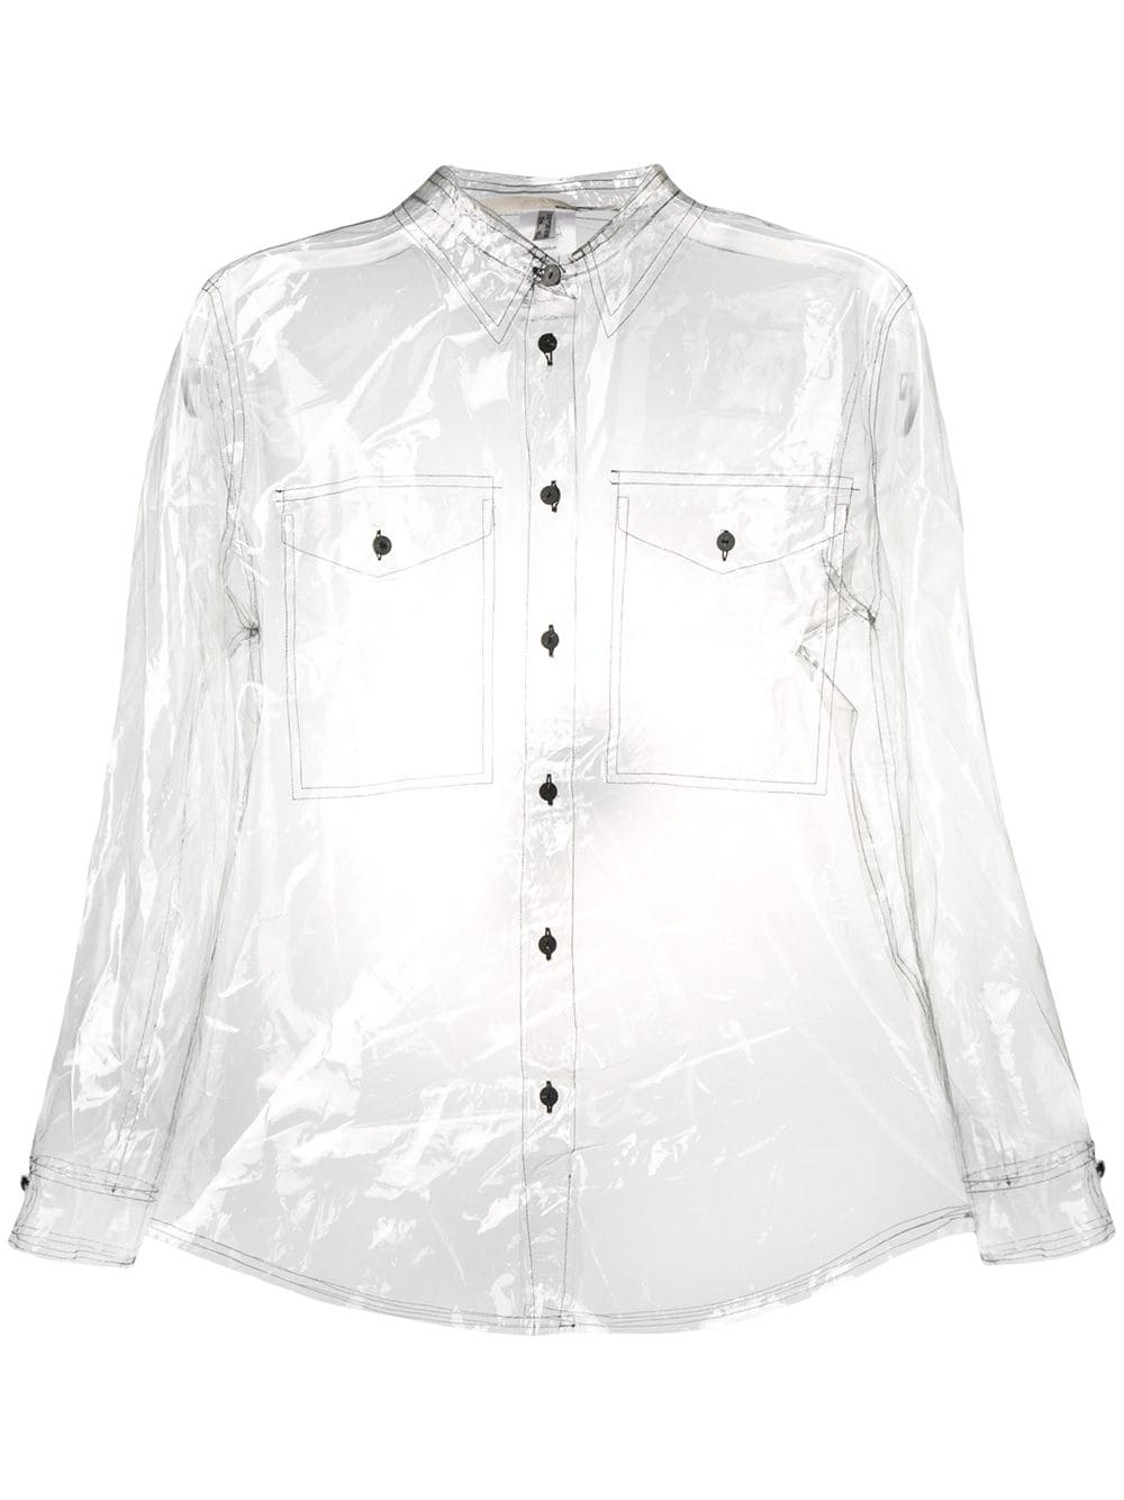 shop Tela  Camicie: Camicia Tela, modello classico,  manica lunga, in tessuto trasparente.

Composizione: 100% poliuretano. number 1338